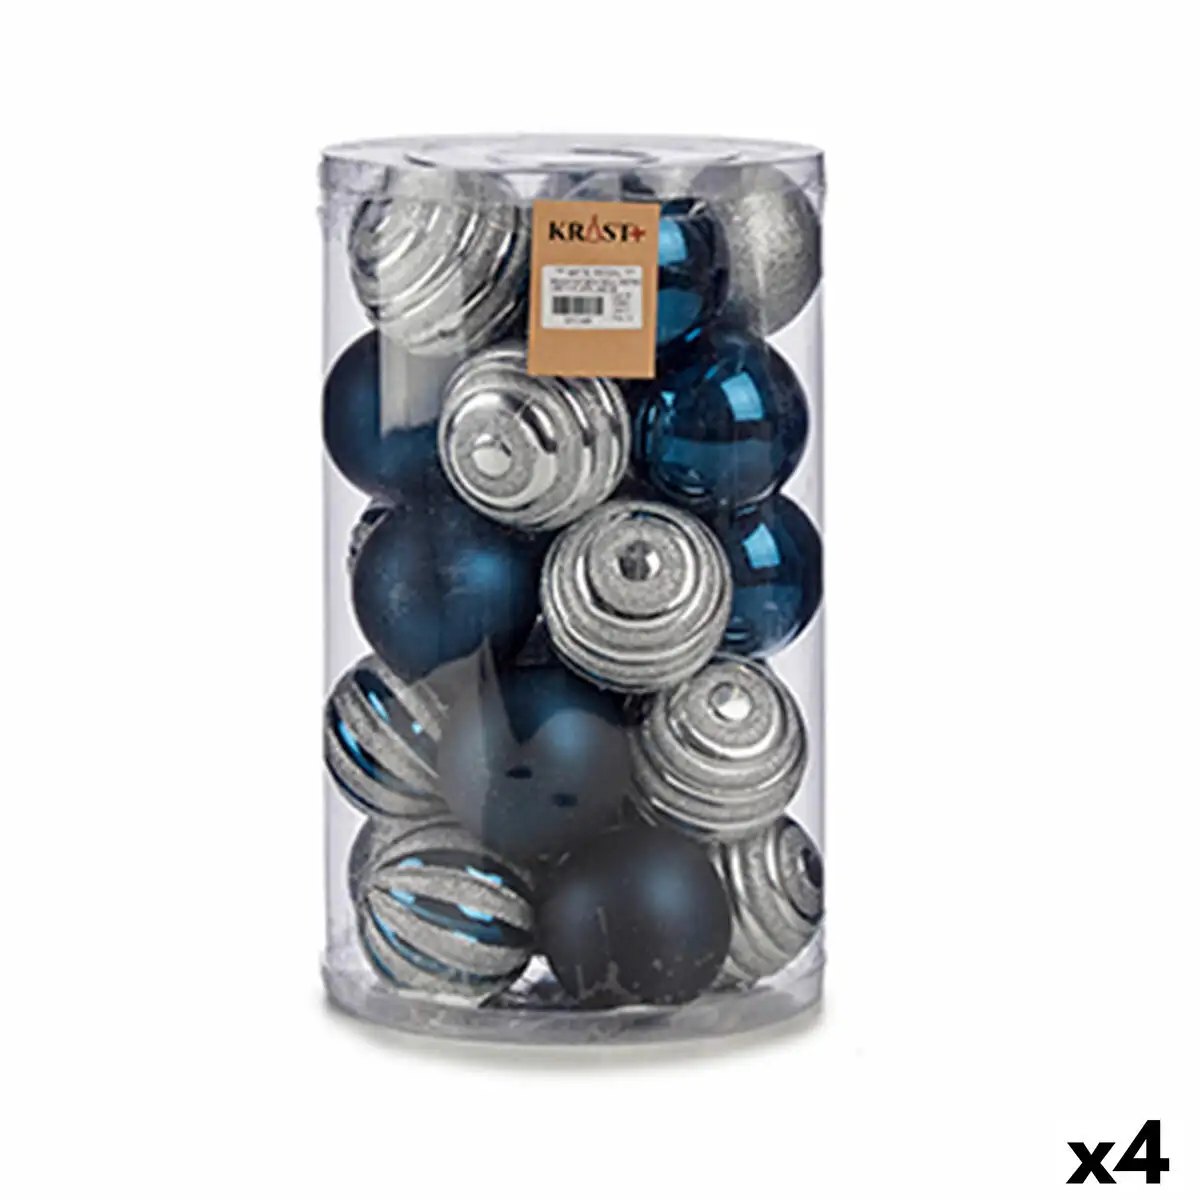 Lot de boules de noel bleu argente pvc o 8 cm 4 unites _1620. DIAYTAR SENEGAL - Votre Plateforme Shopping Engagée. Explorez notre catalogue et choisissez des produits qui reflètent notre dévouement envers la qualité et la satisfaction du client.